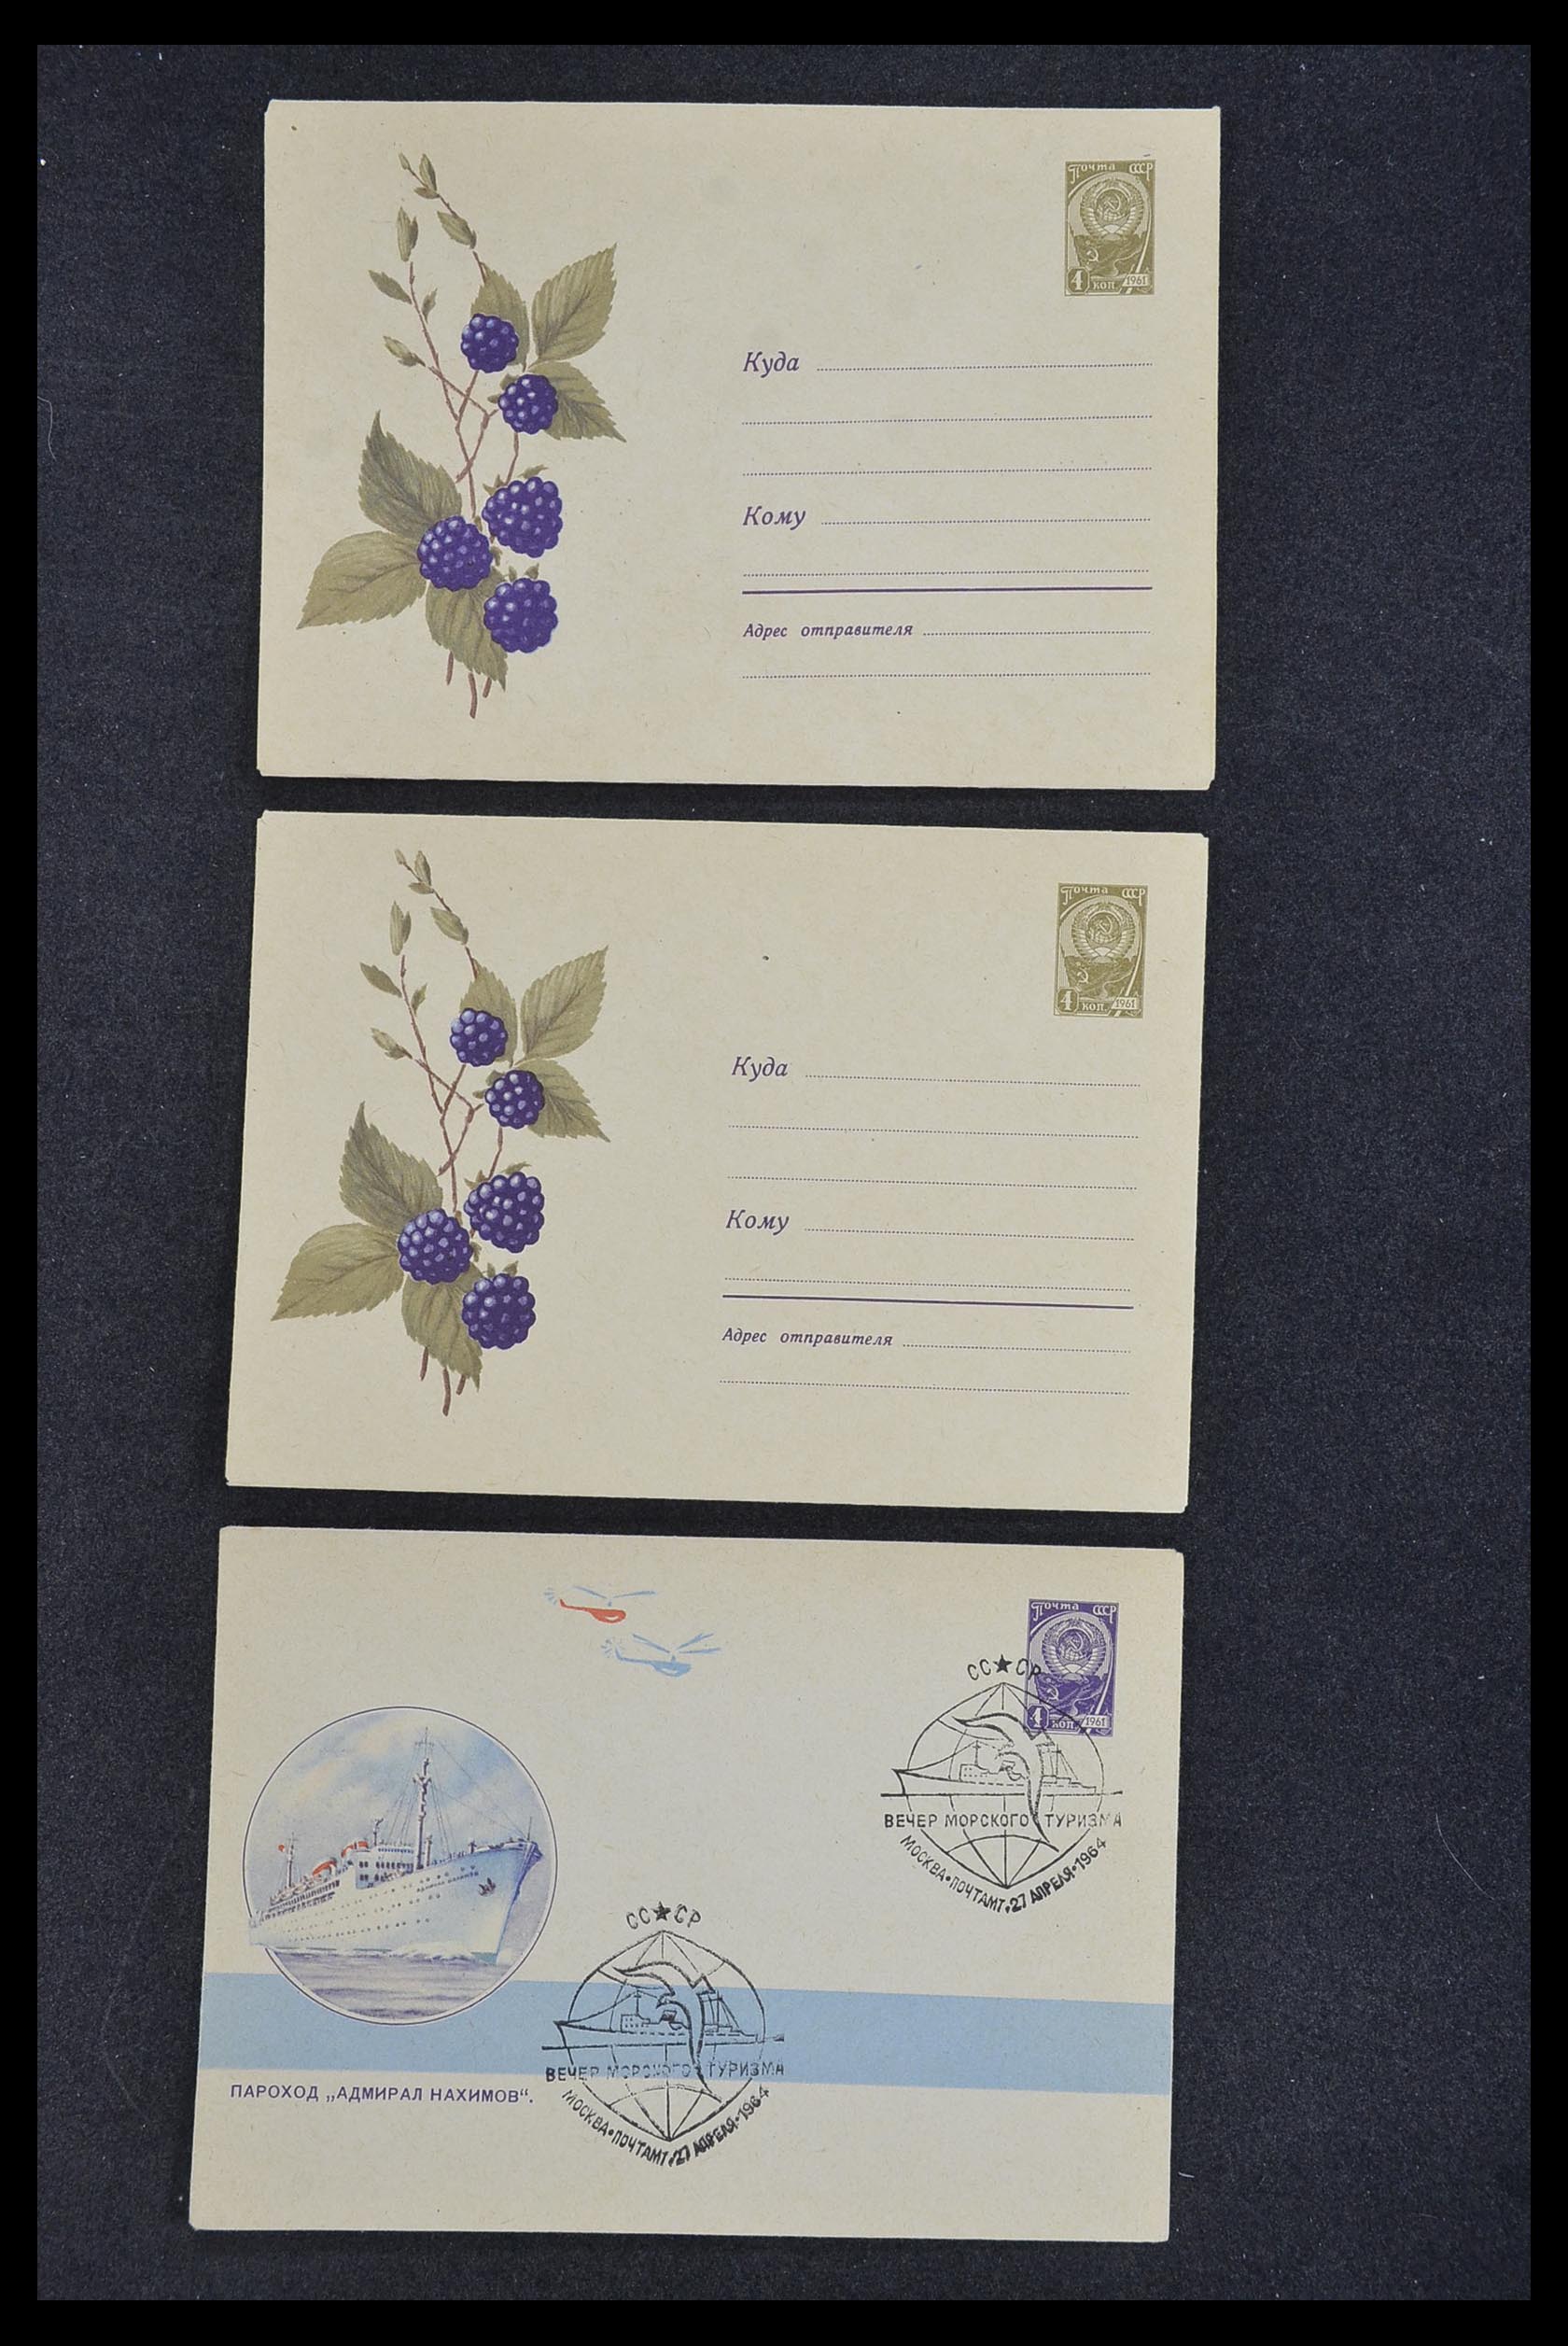 33932 026 - Postzegelverzameling 33932 Rusland postwaaardestukken 1953-1967.